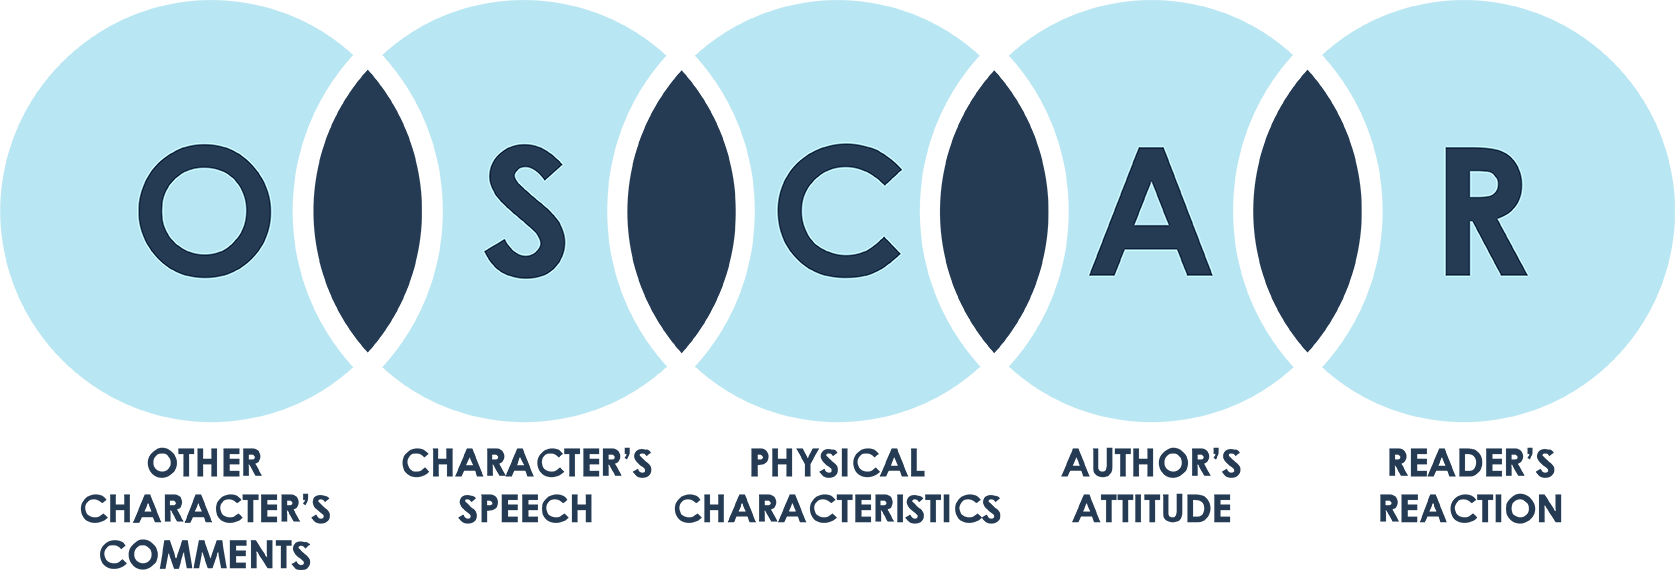 OSCAR Simbolių Analizė